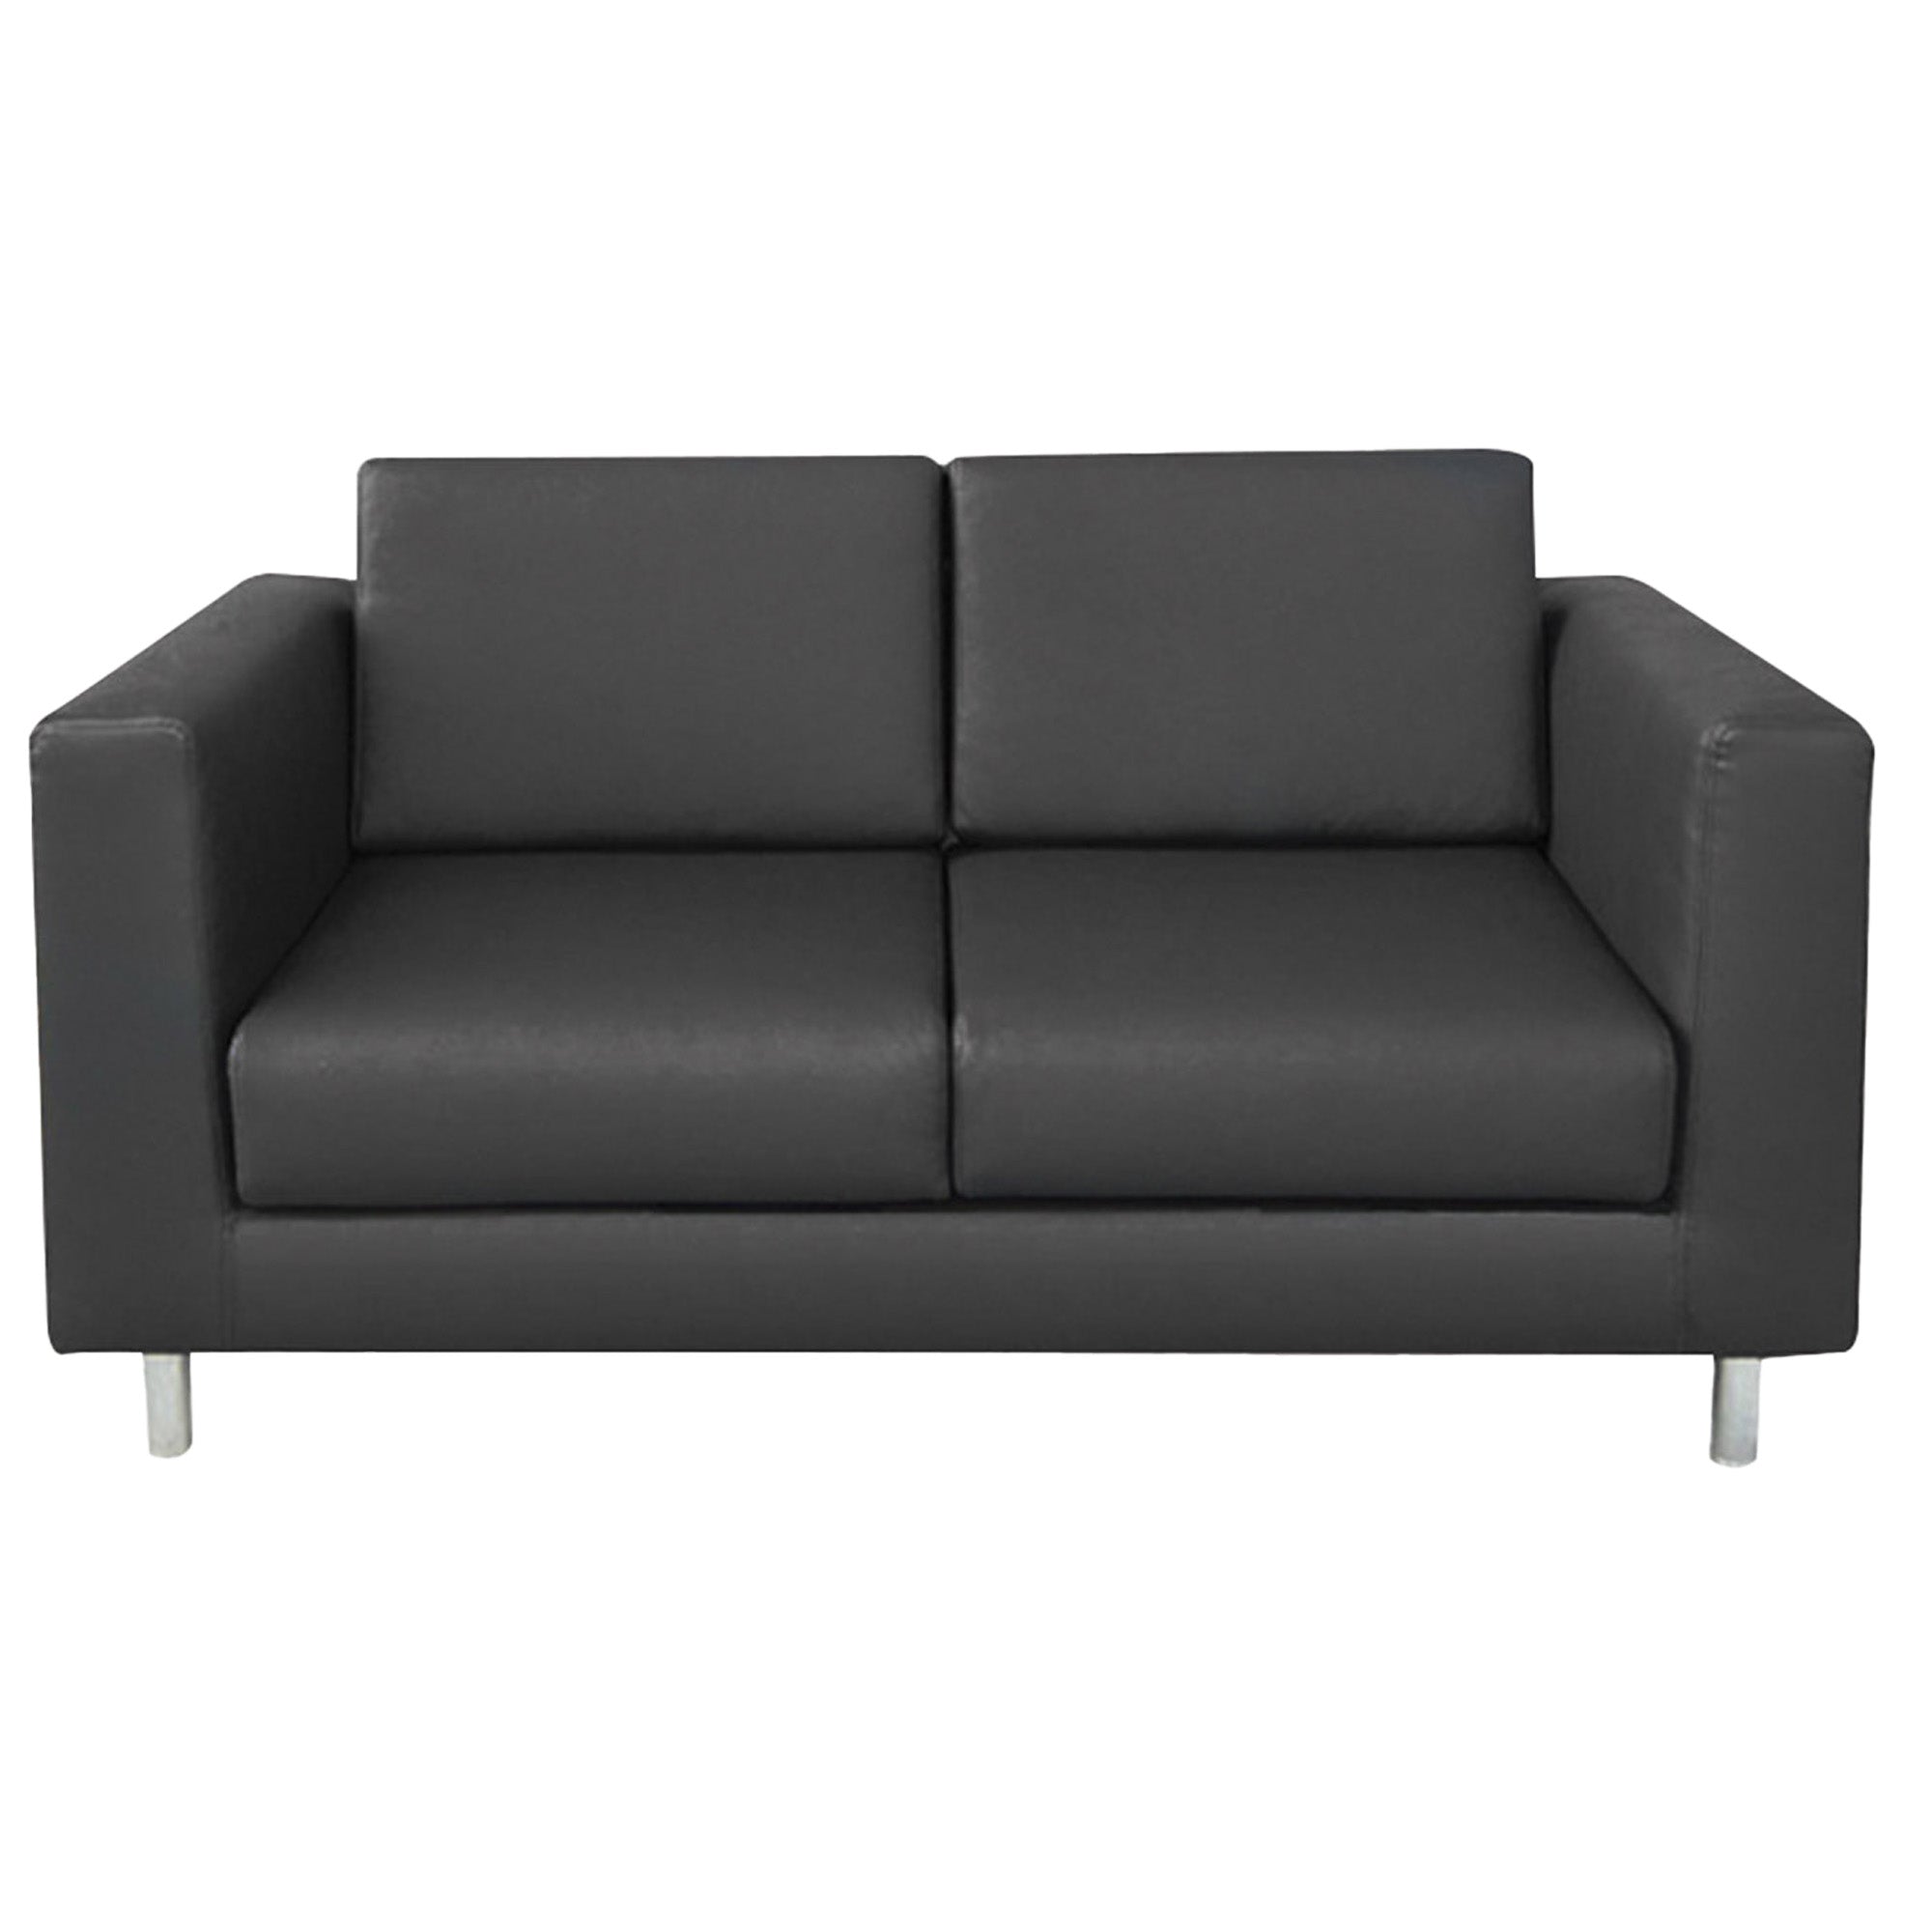 unisit-divano-erica-ek2-2-posti-nero-braccioli-inclusi